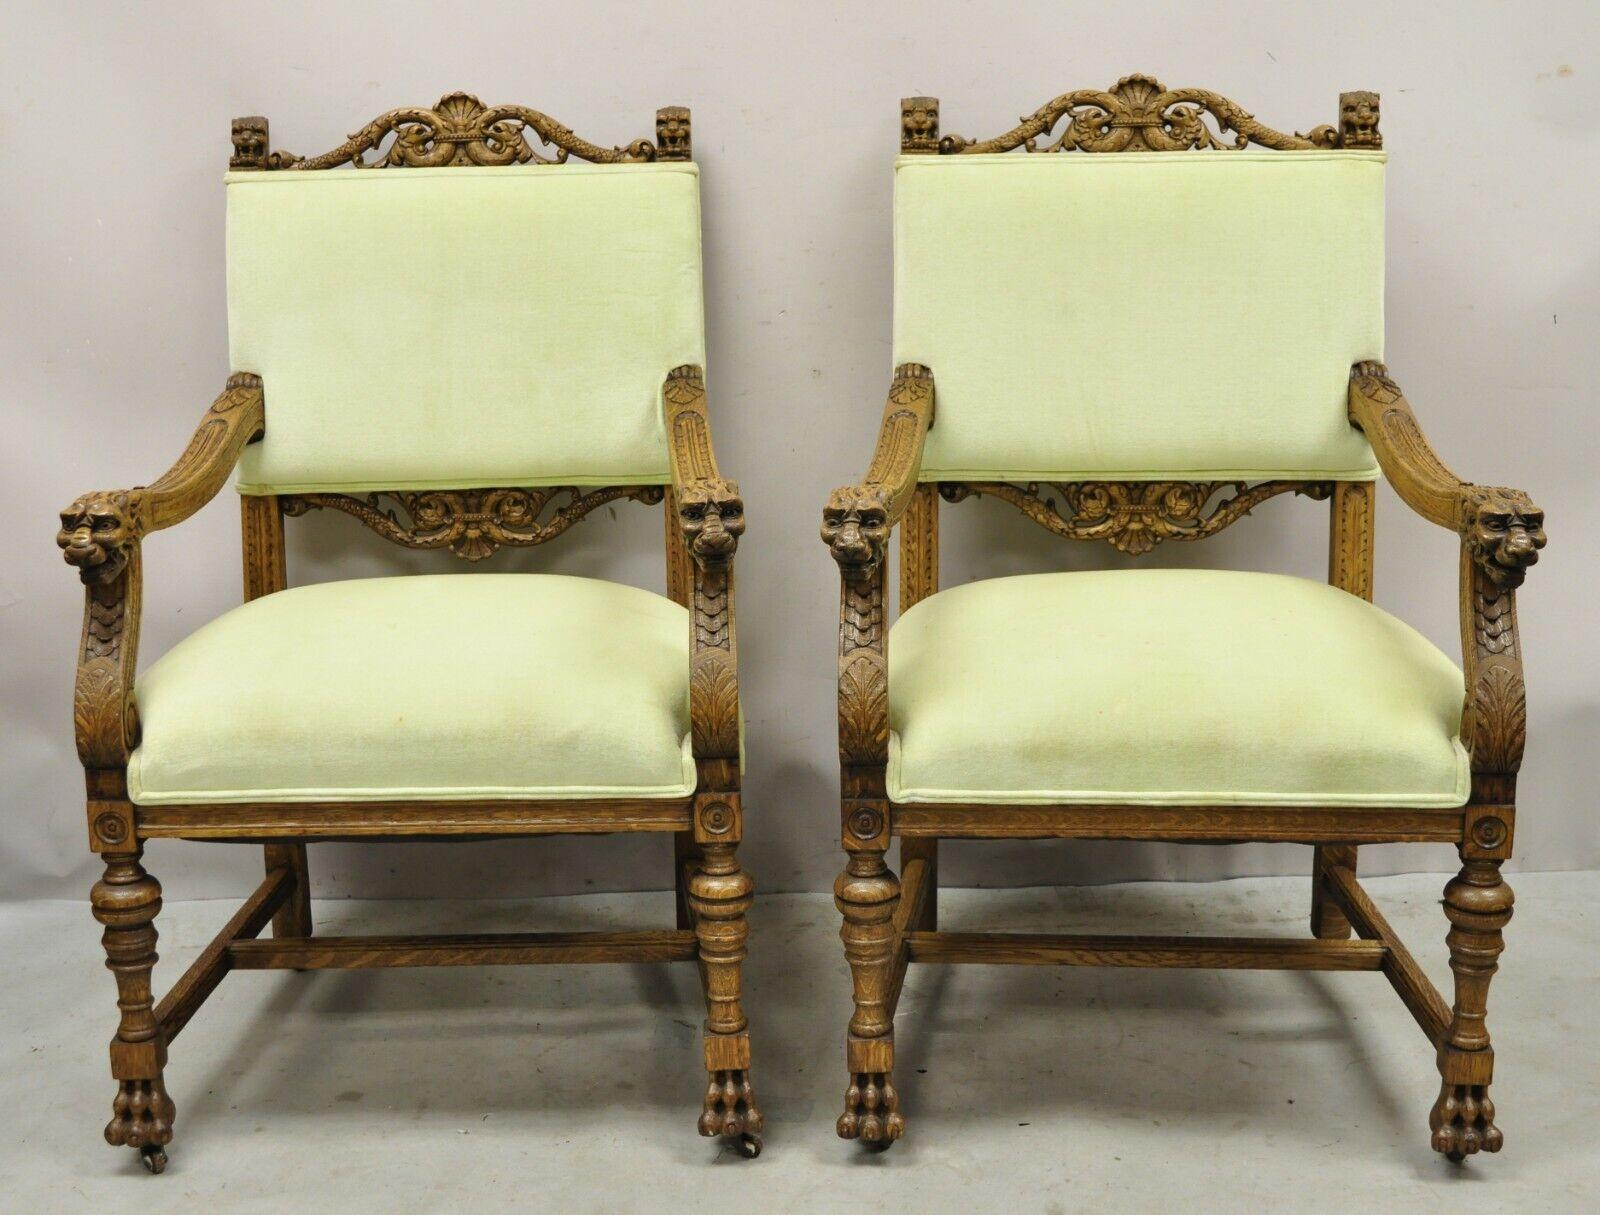 Anciennes chaises à accoudoirs en bois de chêne sculpté à la Renaissance avec tête de lion et pieds de pattes - Paire. L'objet présente des détails merveilleusement sculptés, un rembourrage vert, une très belle paire antique. Circa 1900. Dimensions